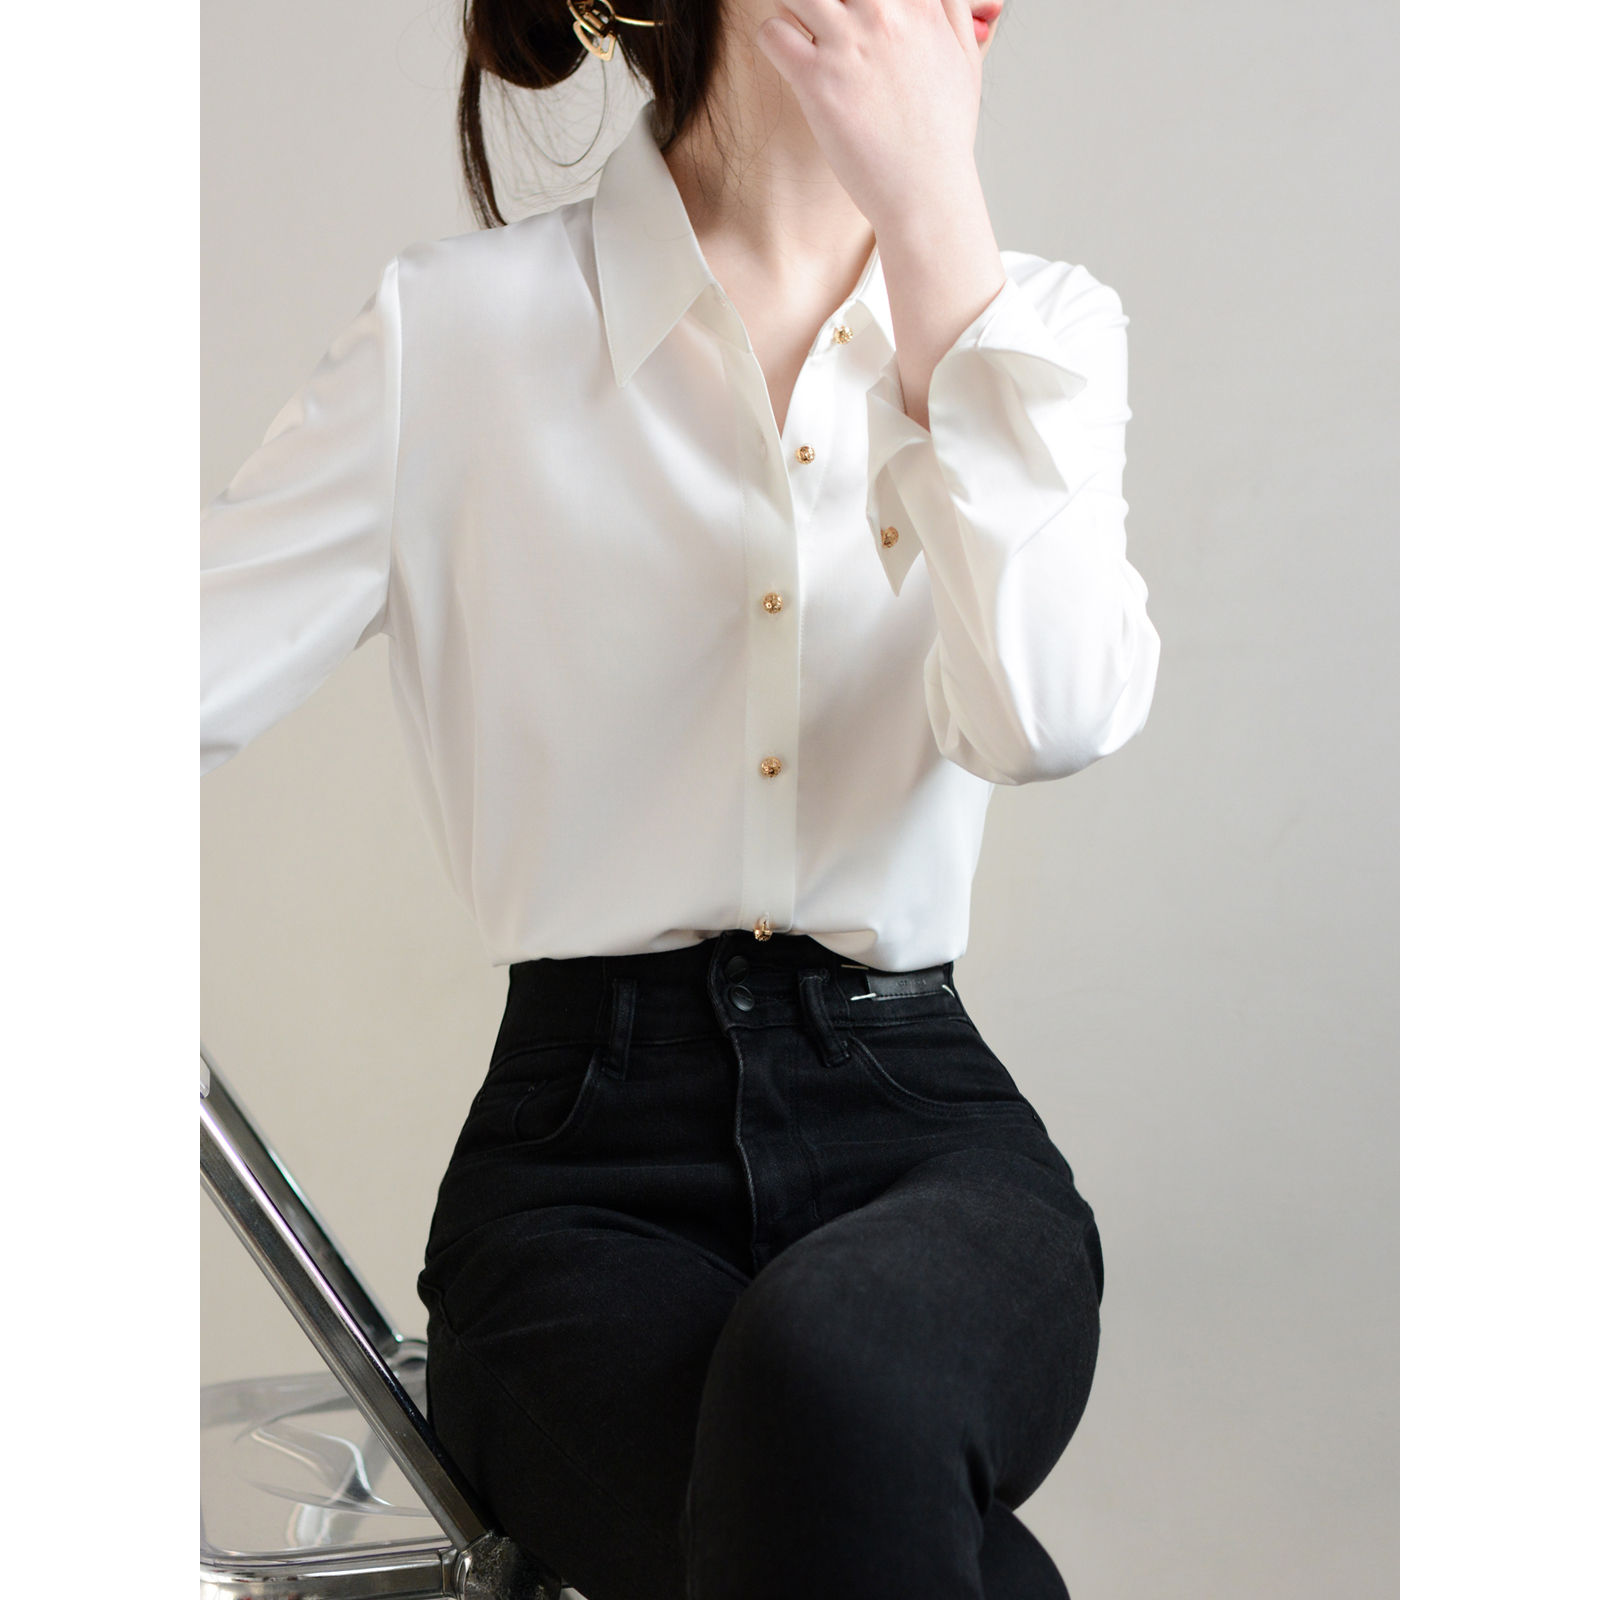 TRR style轻奢气质微宽松女衬衫 镂空金属扣高颜值上衣时髦白衬衣